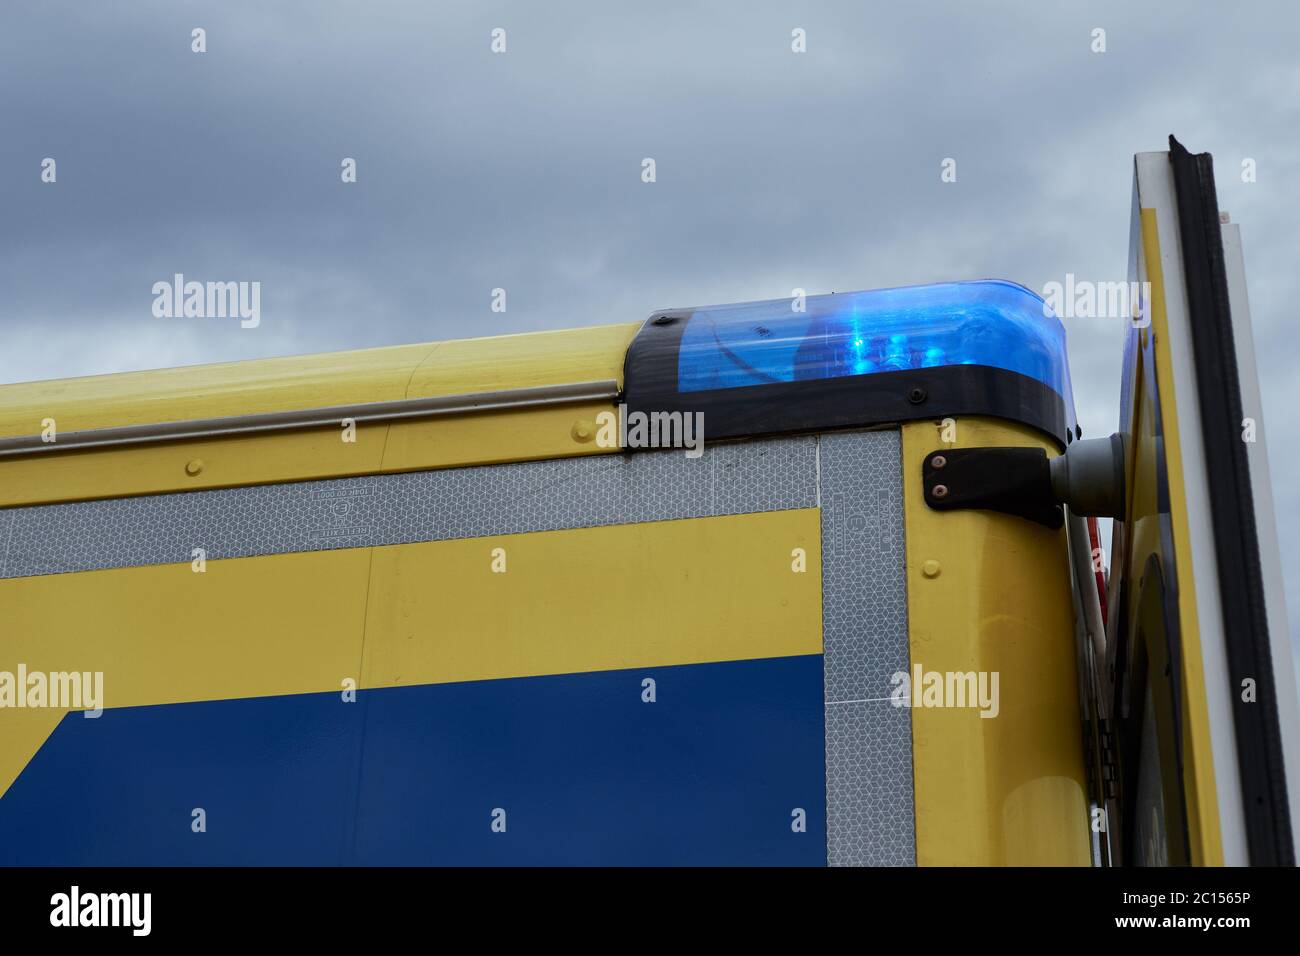 Gros plan d'un véhicule d'urgence avec des feux bleus allumés contre le ciel couvert Banque D'Images